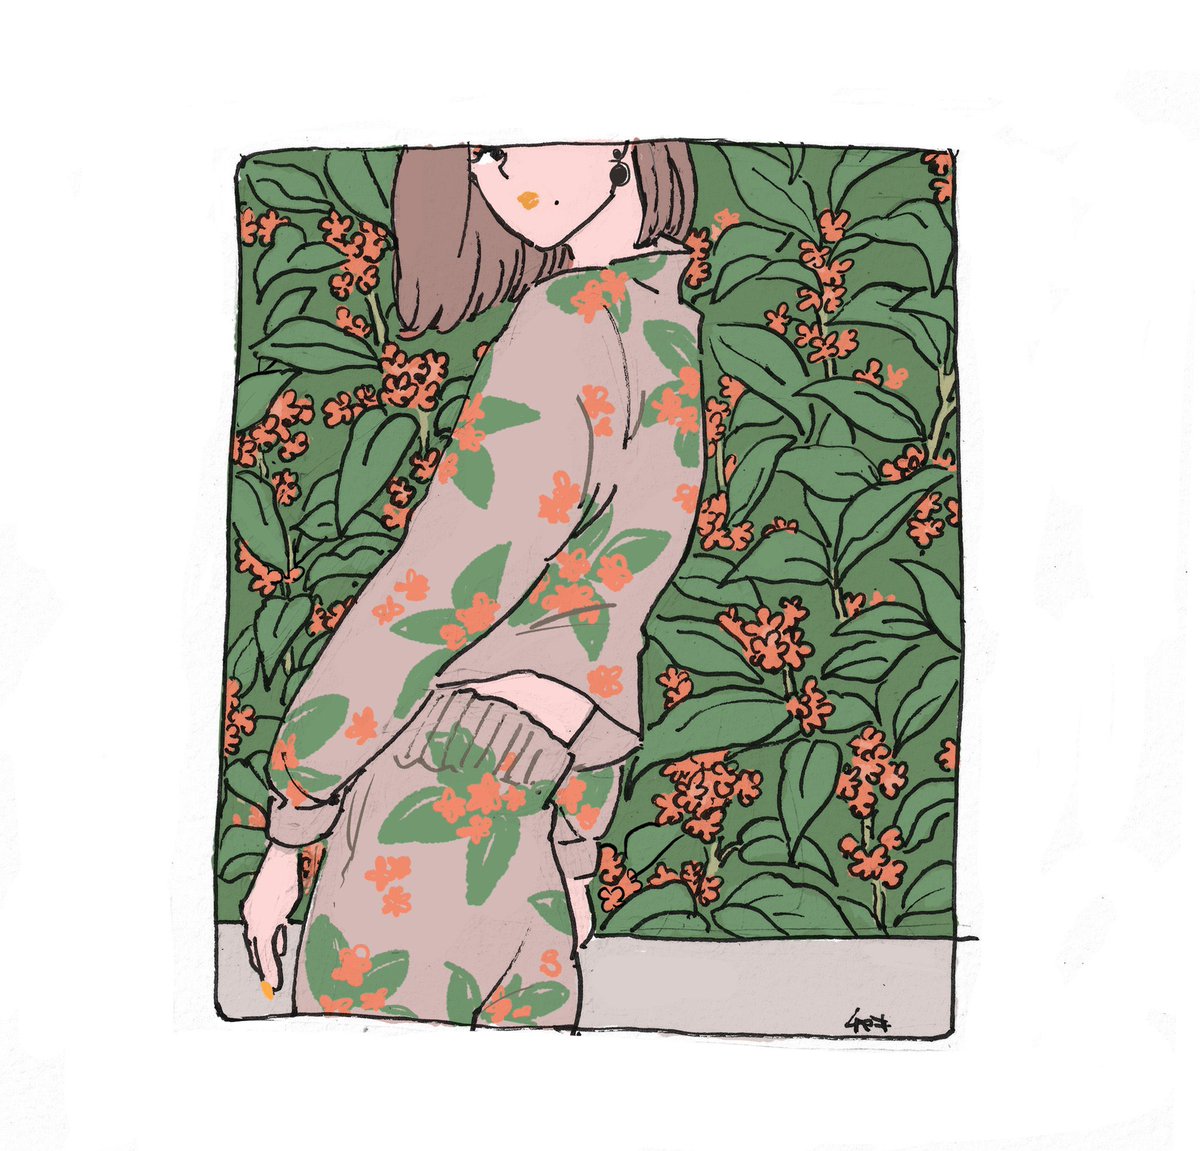 「9月…… #今月描いた絵を晒す 」|チヤキ/CHAKIのイラスト